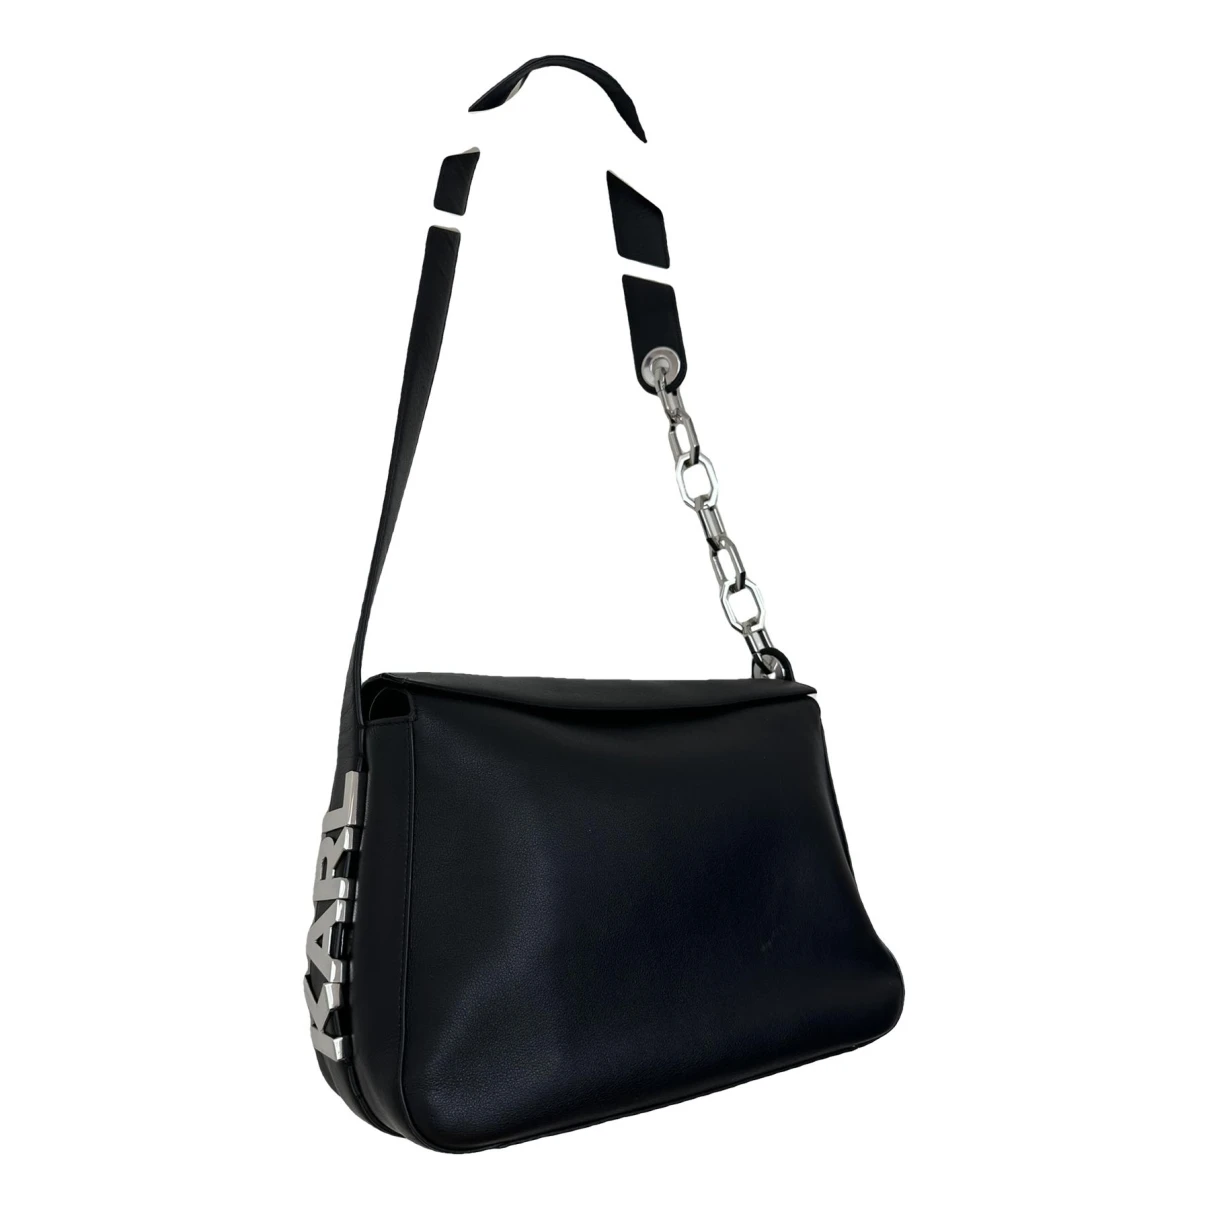 Pre-owned Karl Lagerfeld Leather Handbag In Black